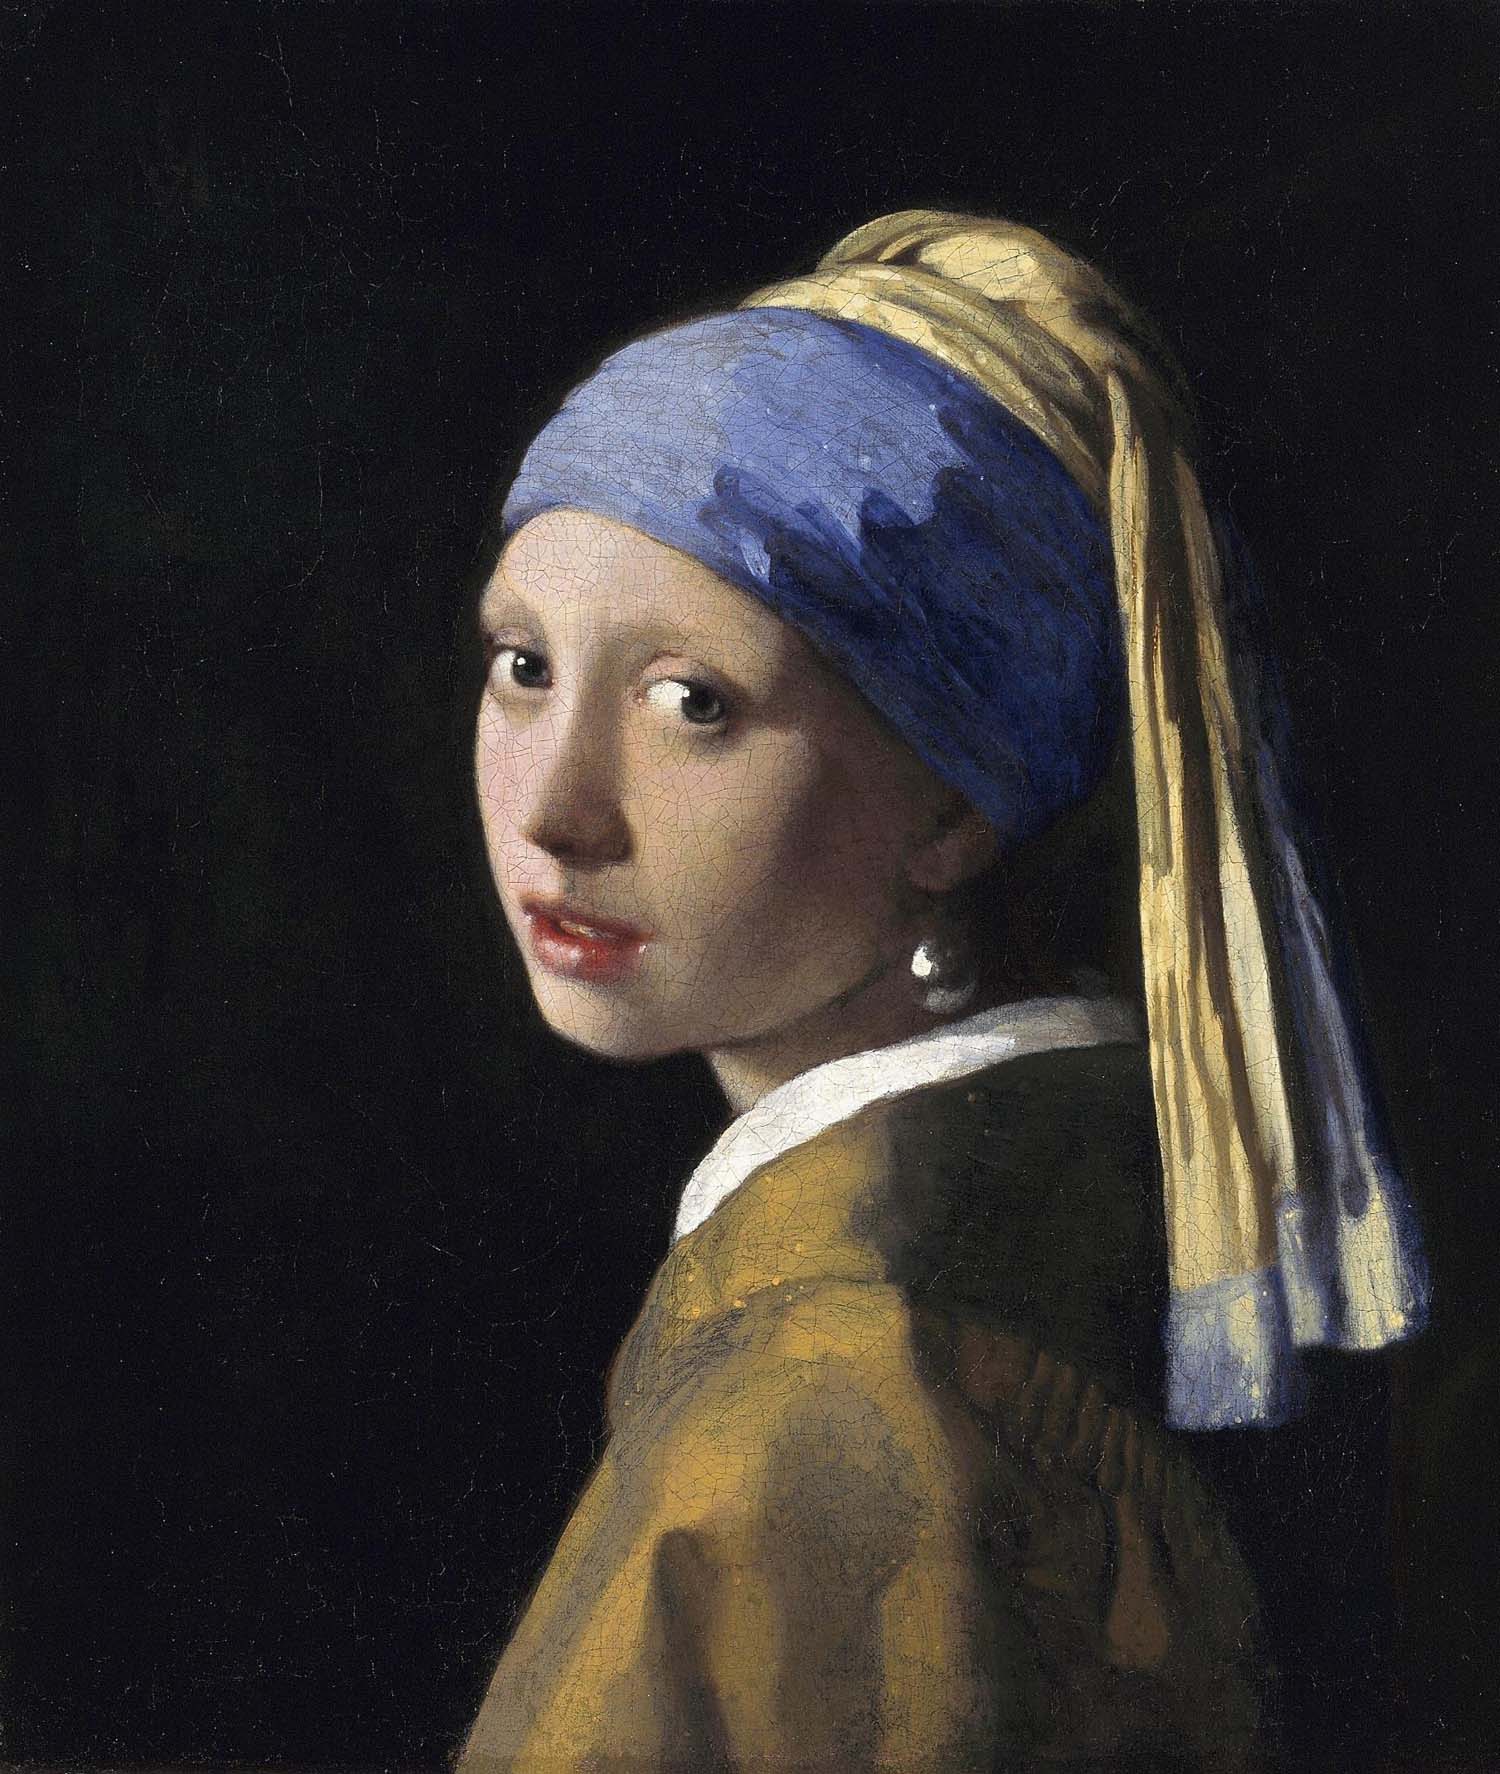 Meisje met de parel van Johannes Vermeer